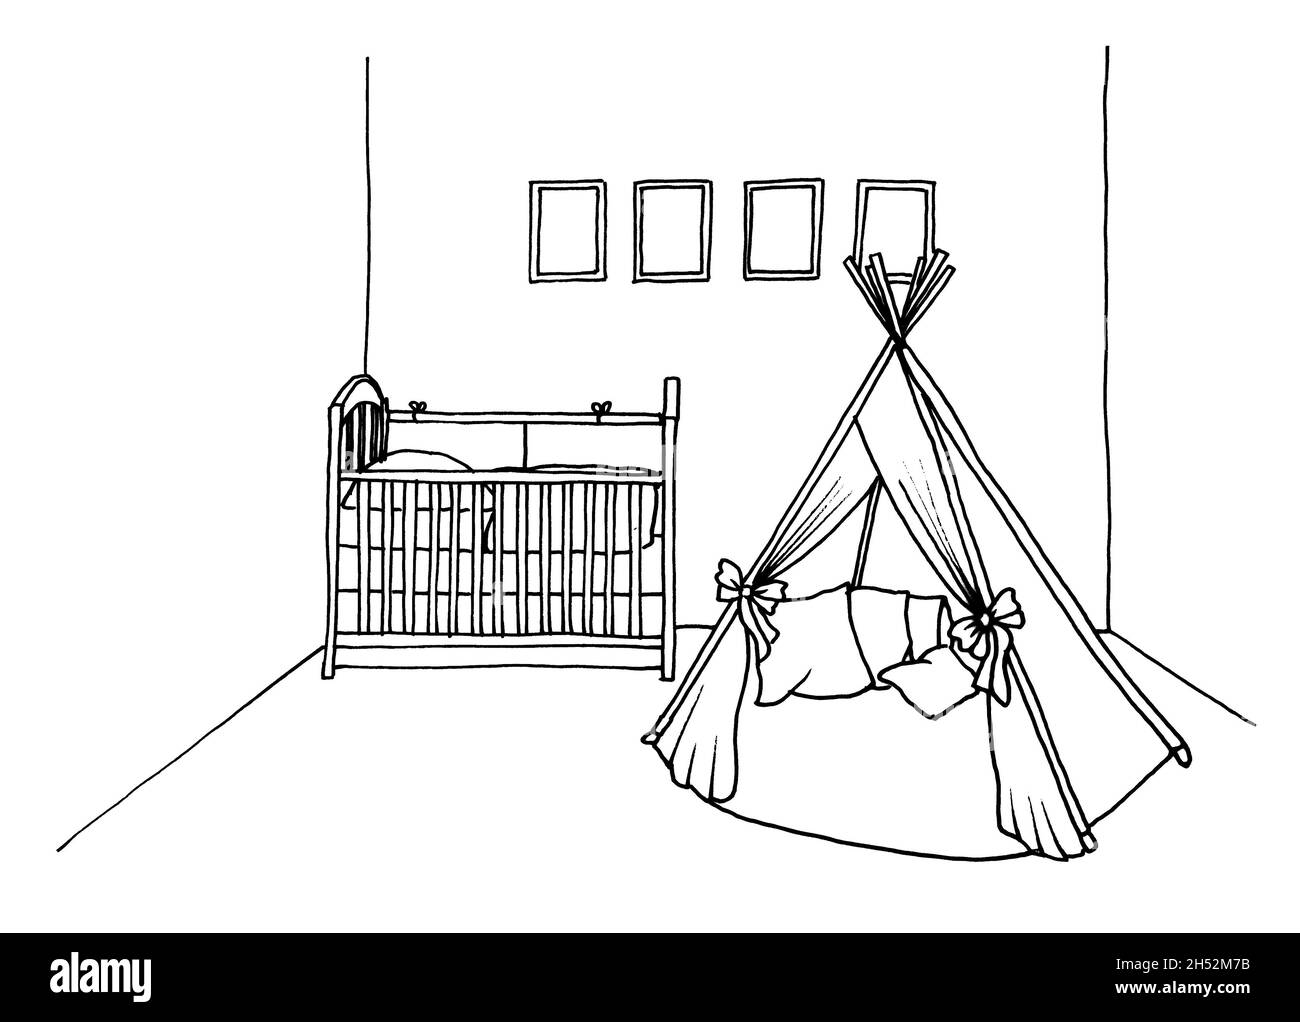 Croquis graphique d'une chambre intérieure pour enfants un lit et une école d'équitation, une tente Banque D'Images